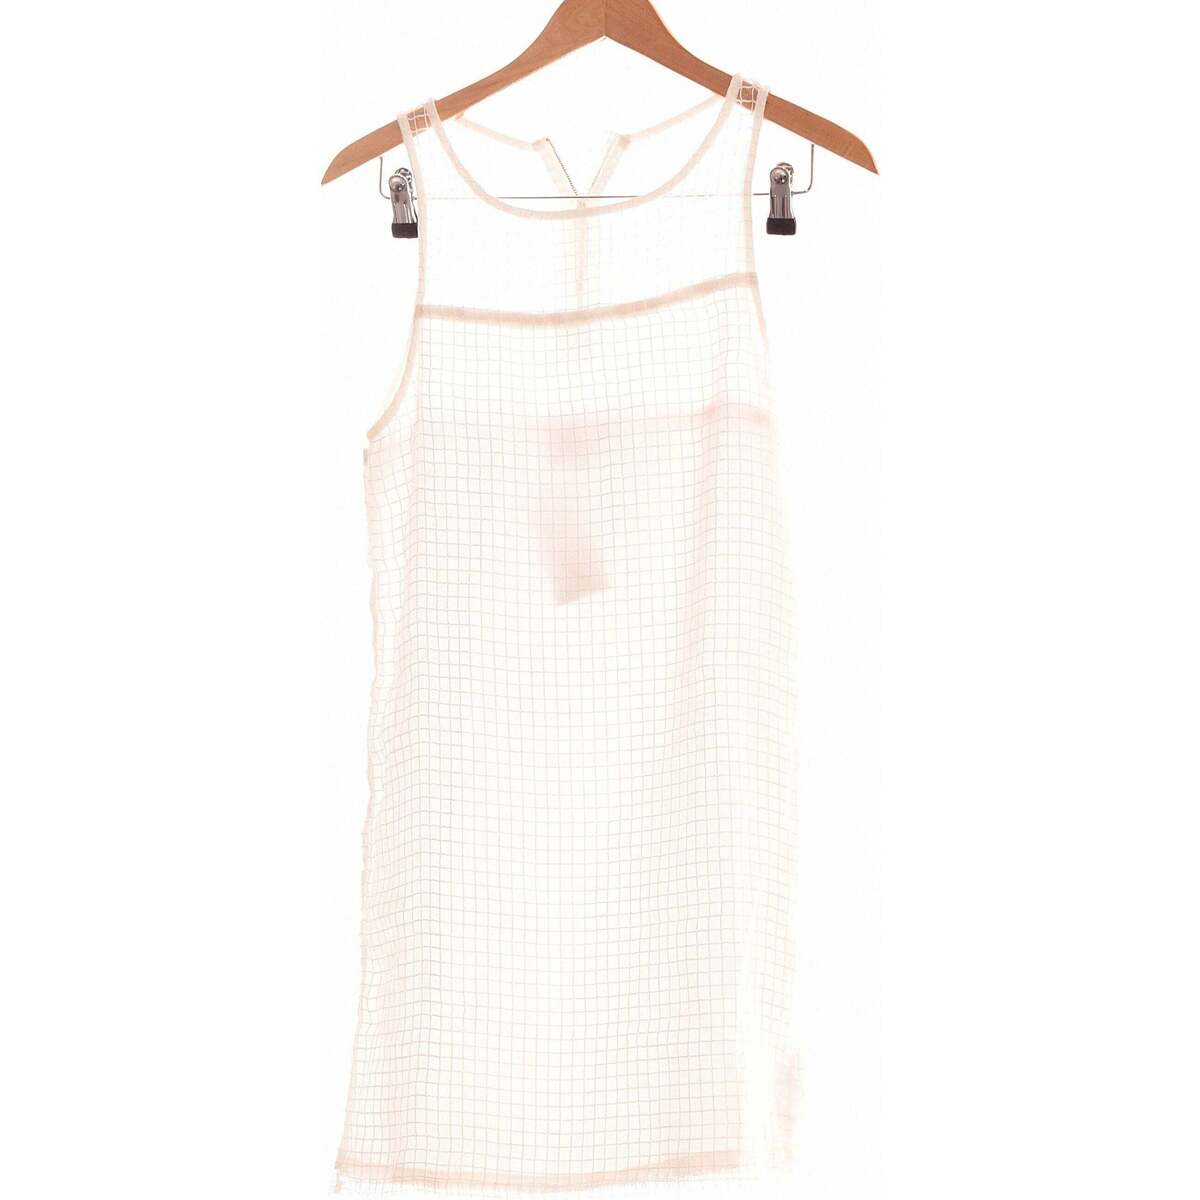 Vêtements Femme Robes courtes Asos robe courte  36 - T1 - S Blanc Blanc